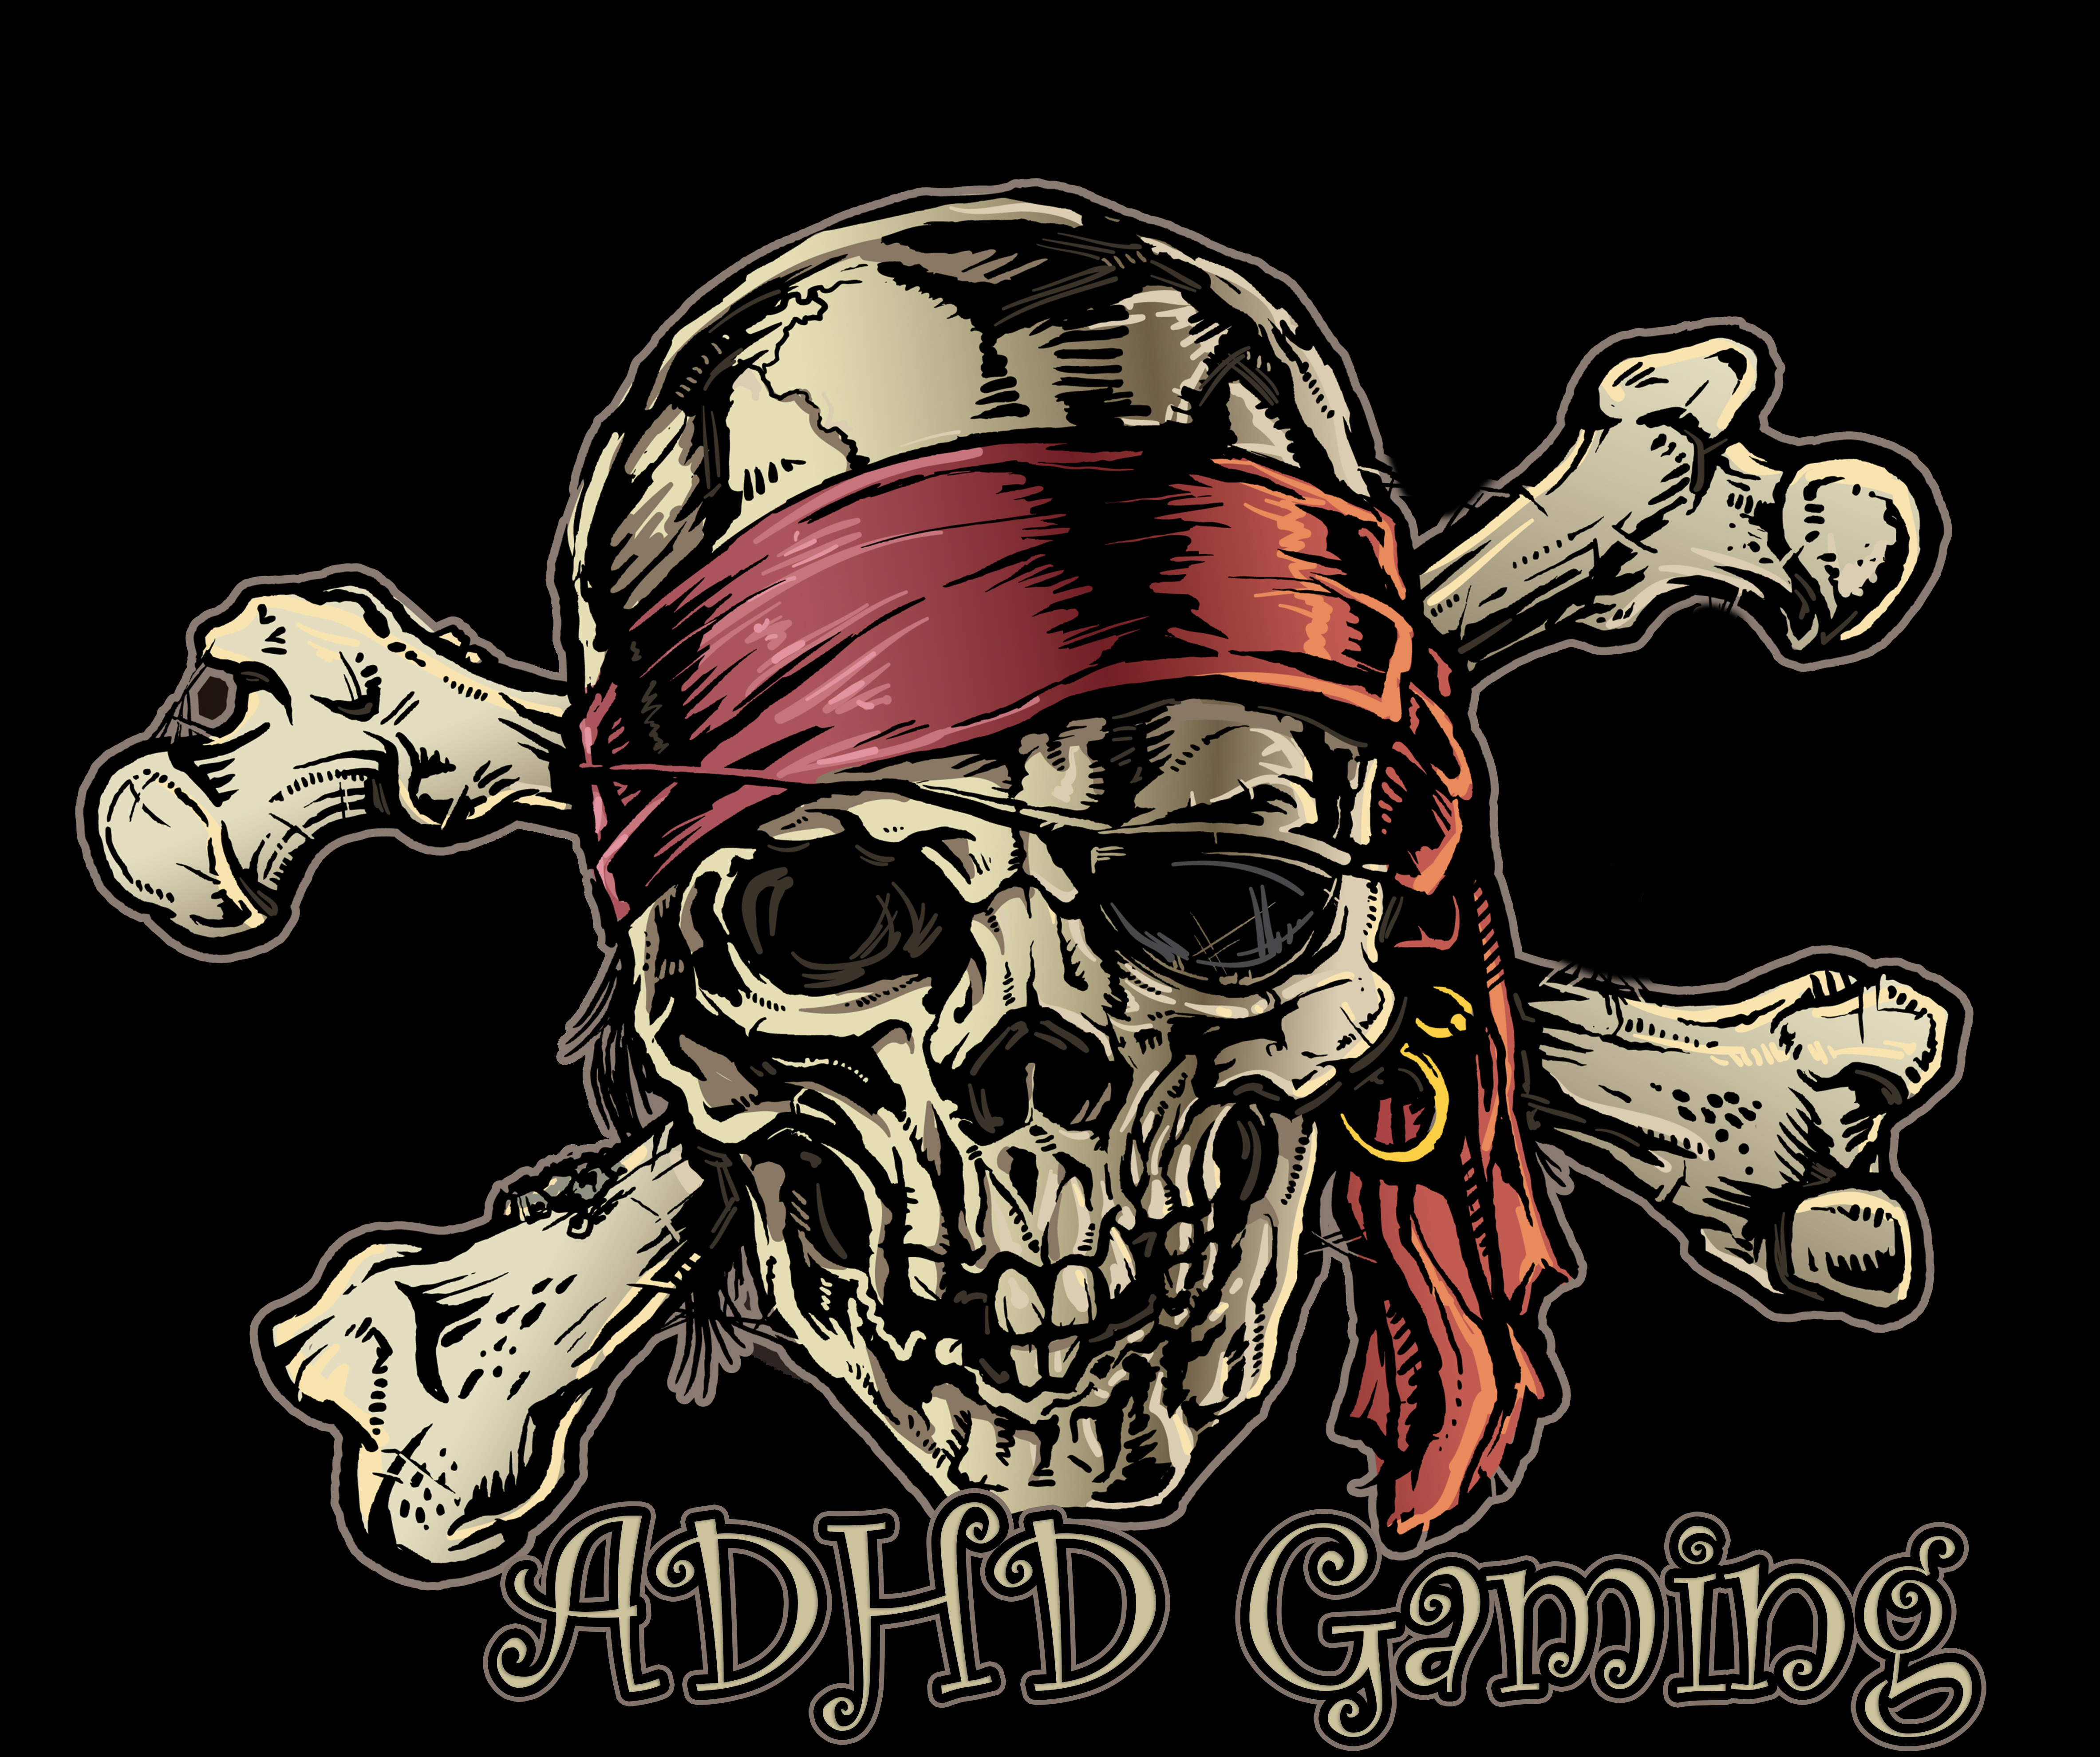 Atlas-pirate-ADHD.png